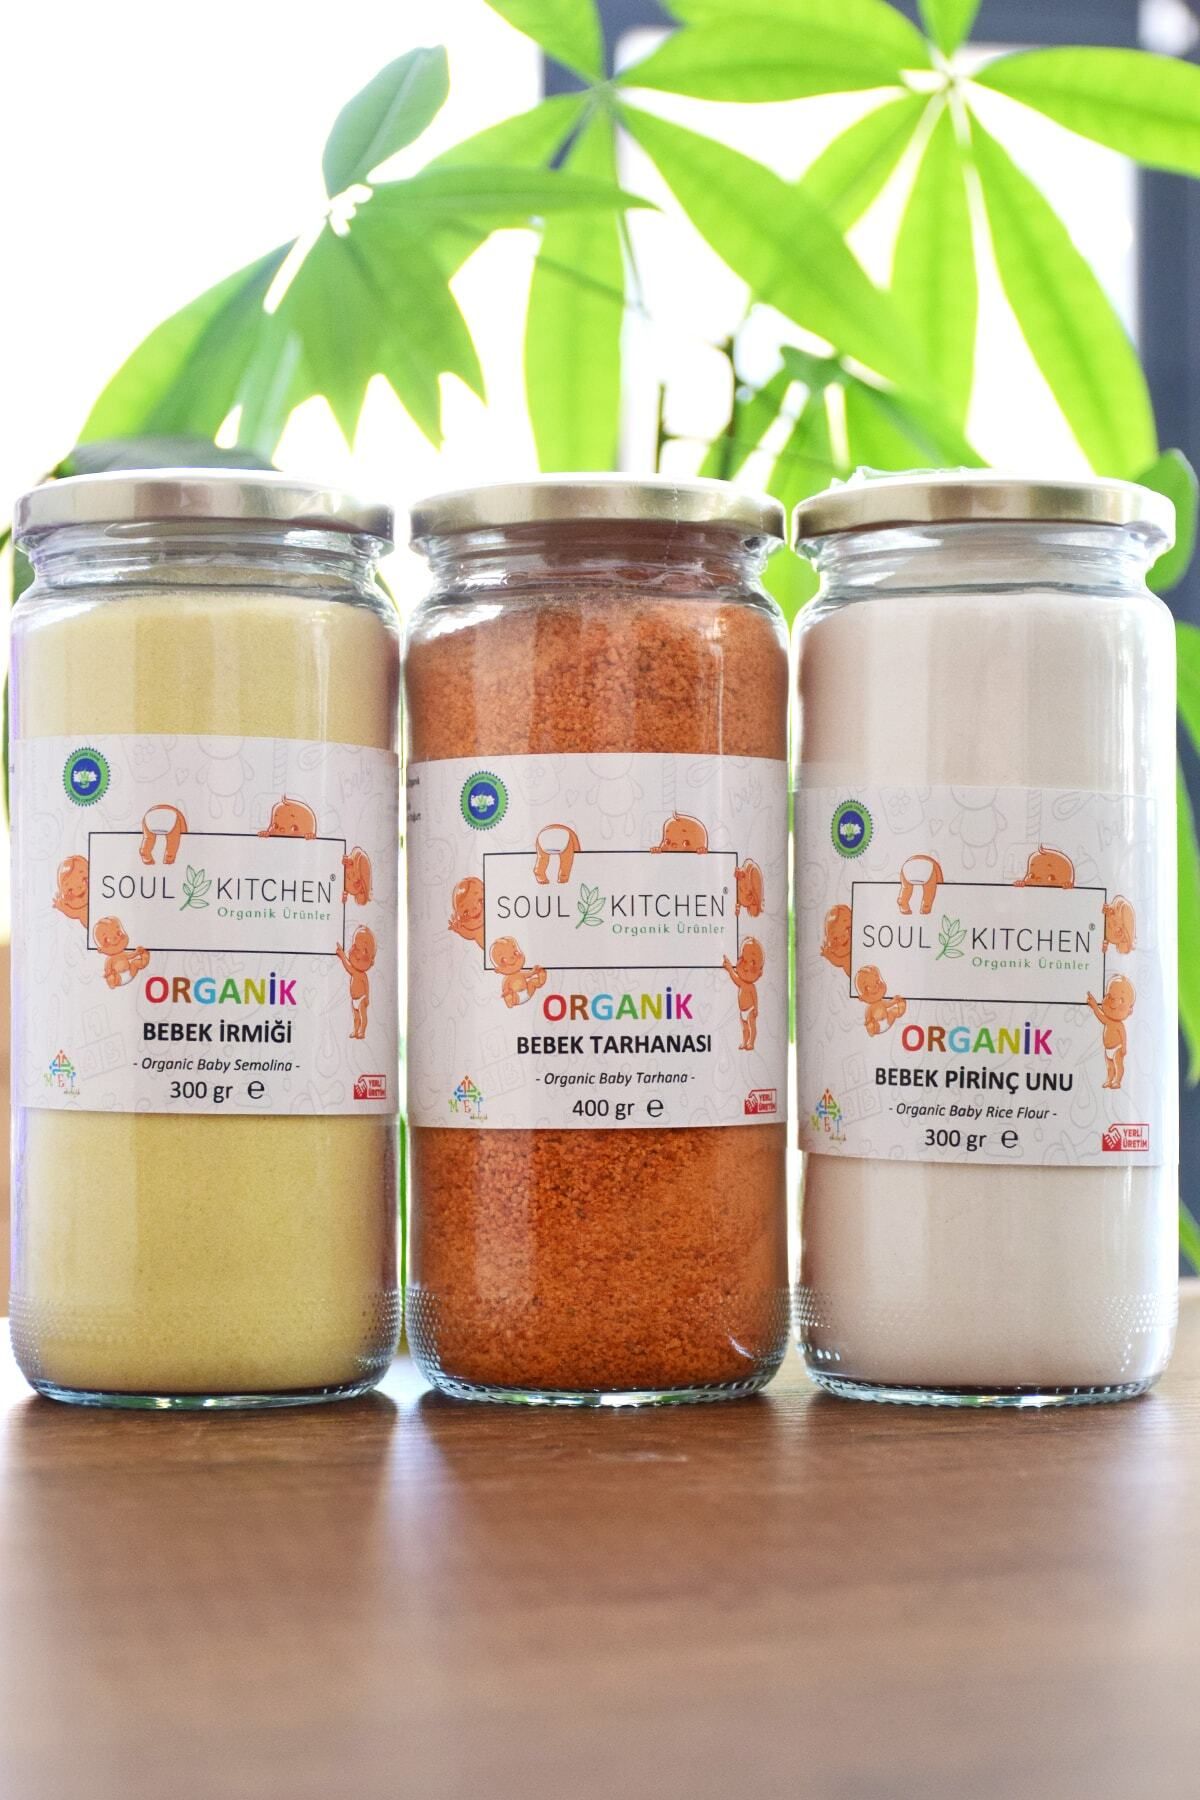 Soul Kitchen Organik Ürünler Organik Bebek Irmiği 300gr Bebek Pirinç Unu 300gr Bebek Tarhanası 400gr Ek Gıda Avantaj Seti